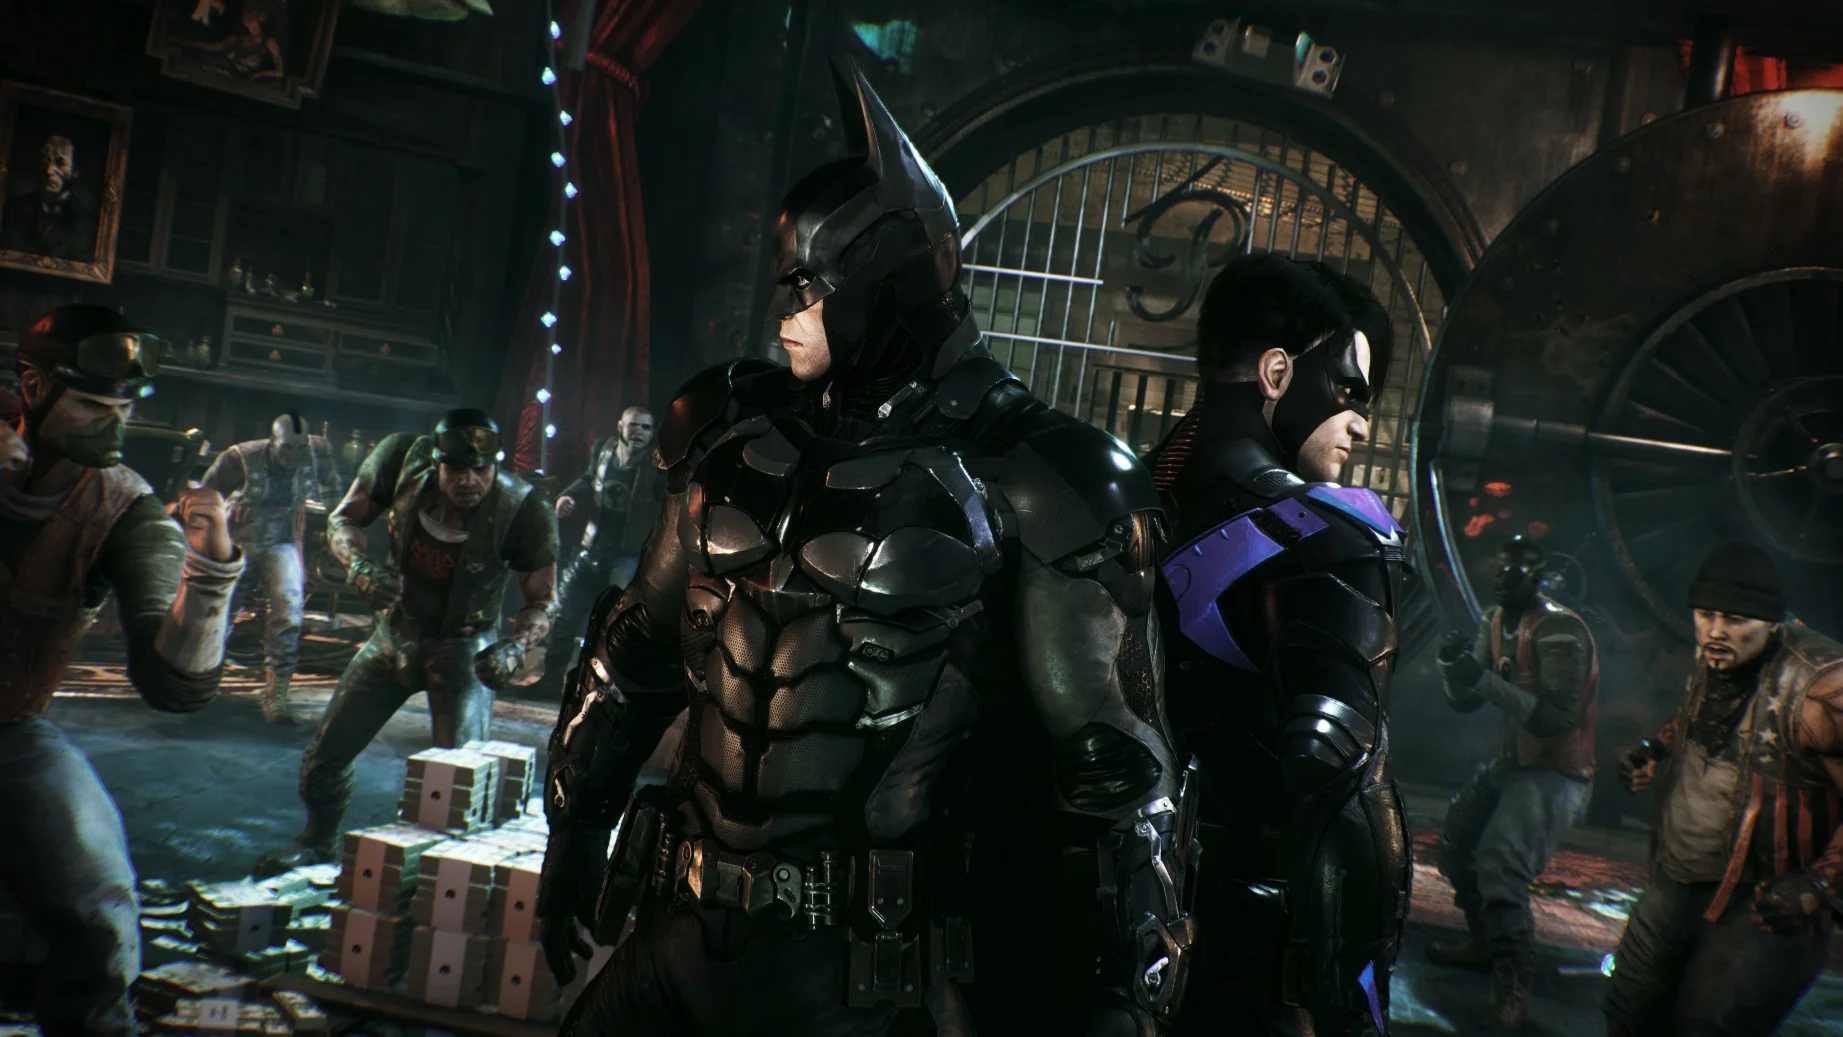 Слух: создатели Batman: Arkham Knight работают над next-gen игрой про Лигу справедливости - фото 1